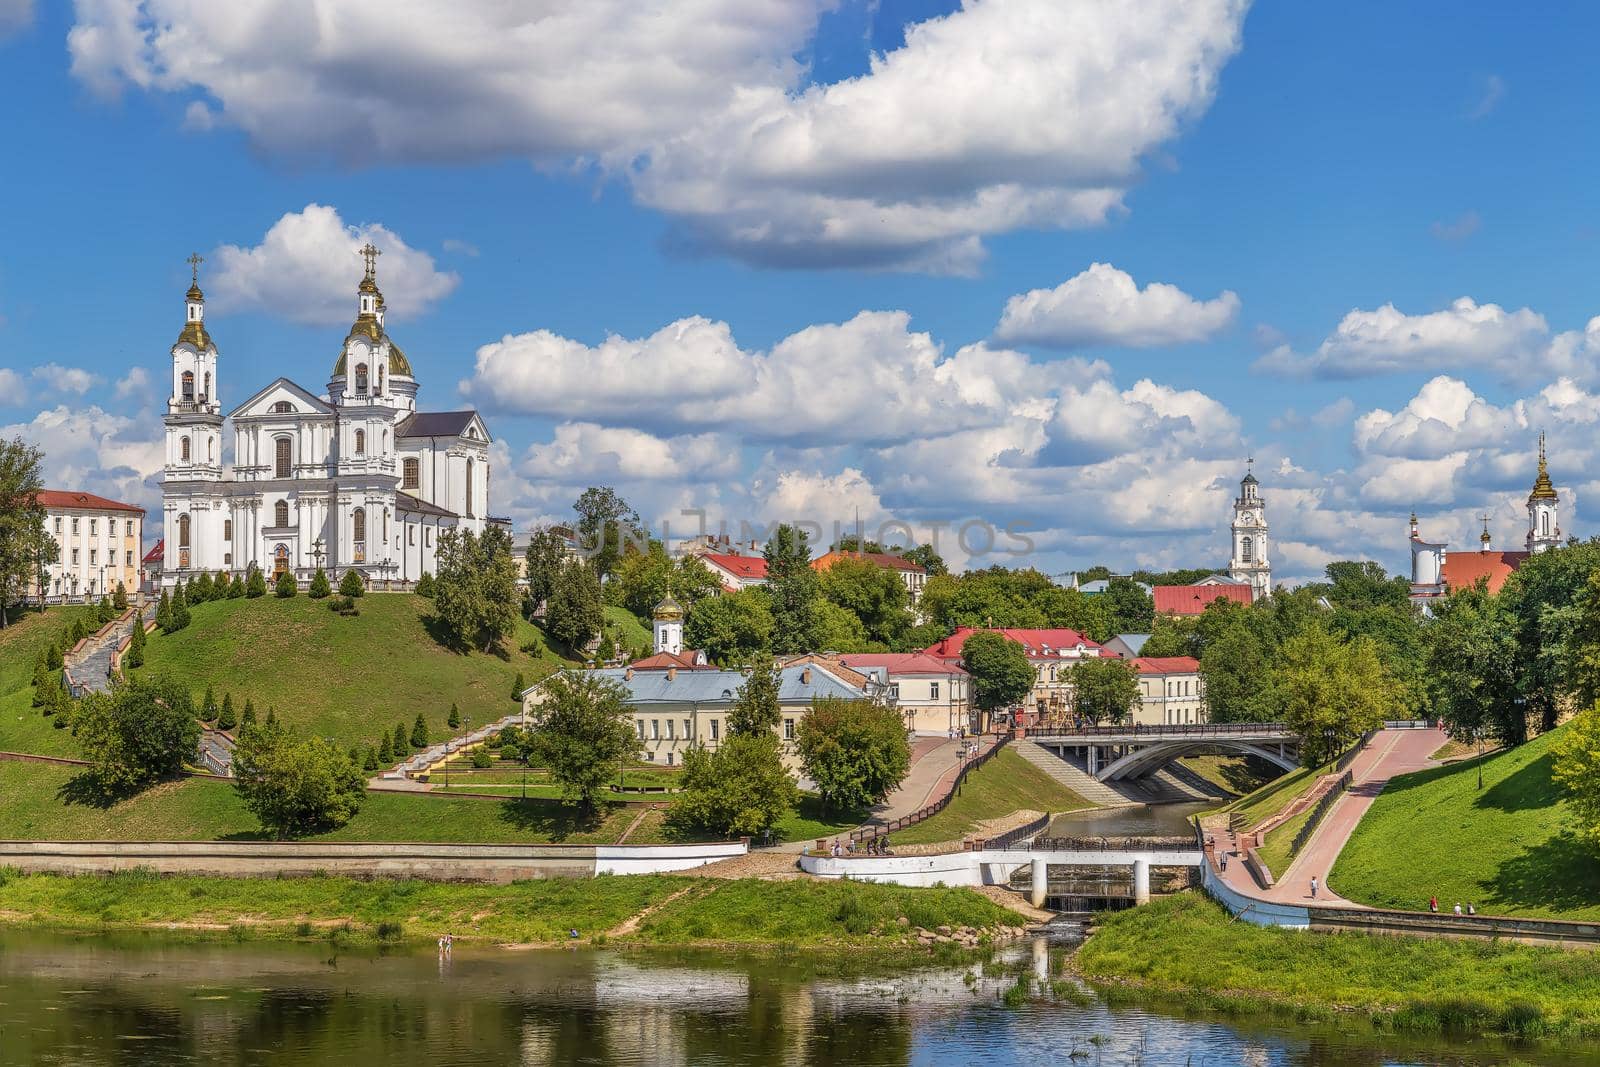 View of Vitebsk, Belarus by borisb17